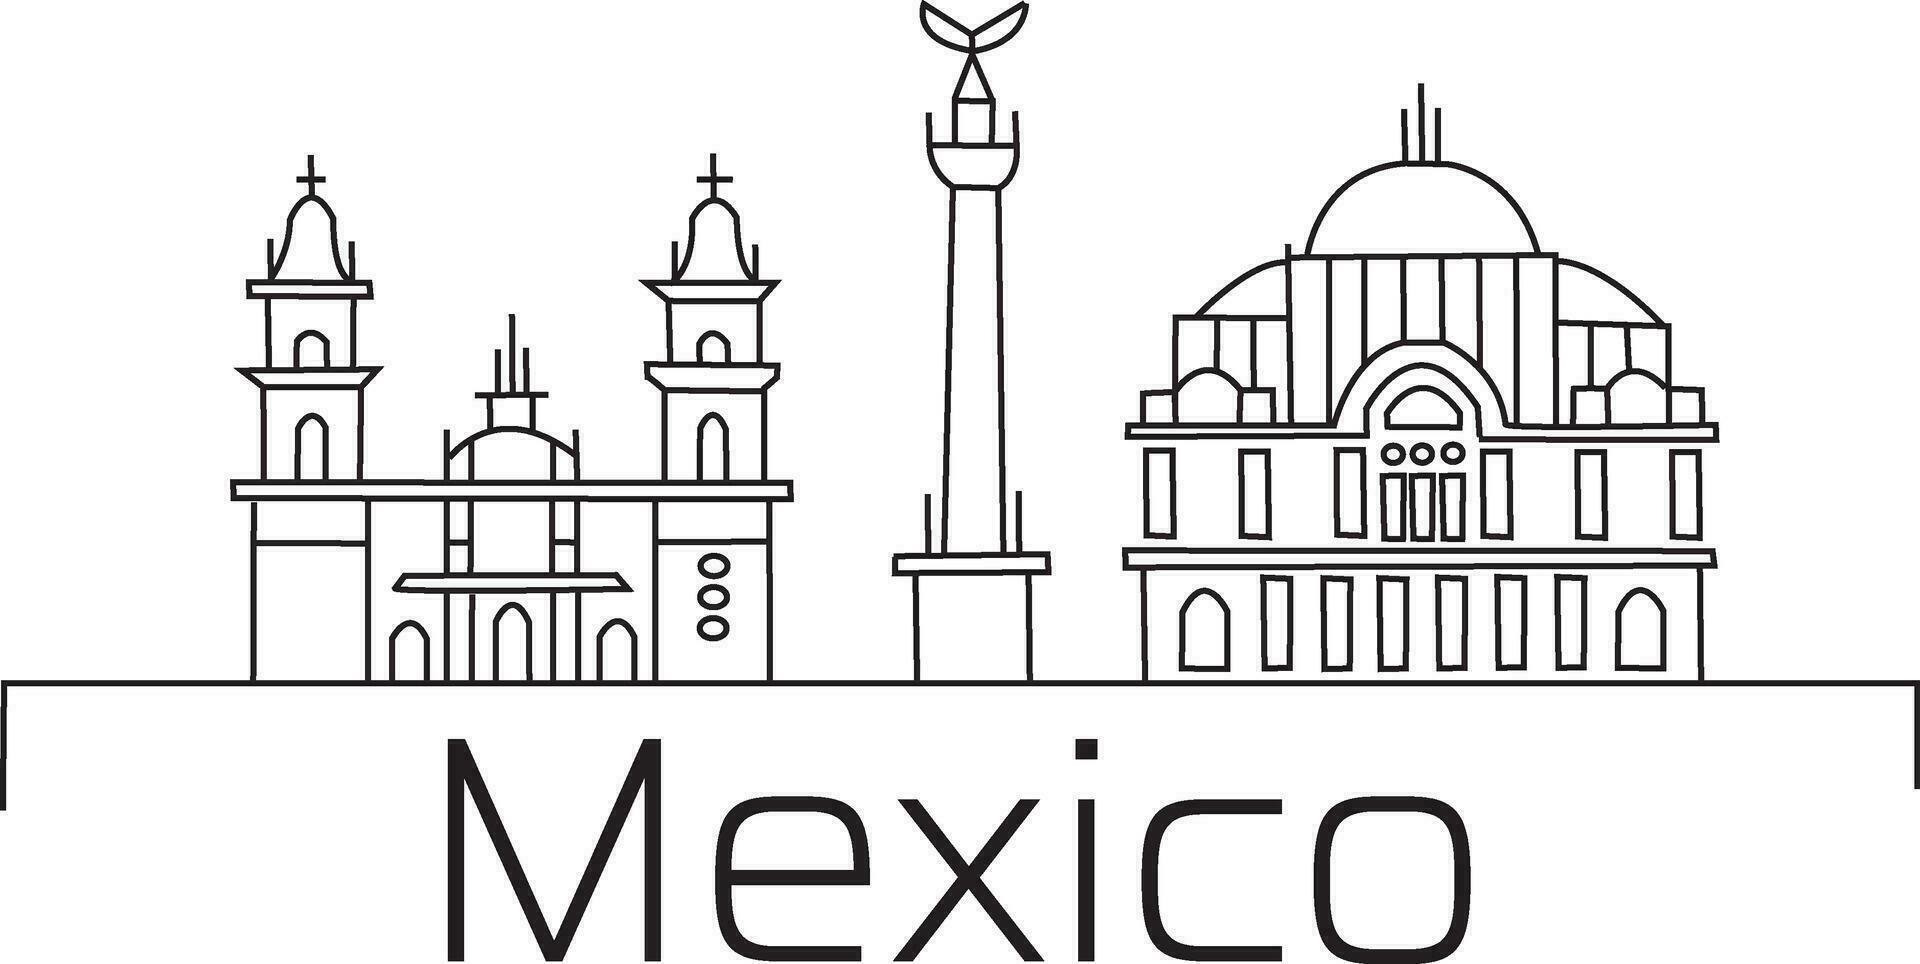 Mexico stad lijn trek vrij vector